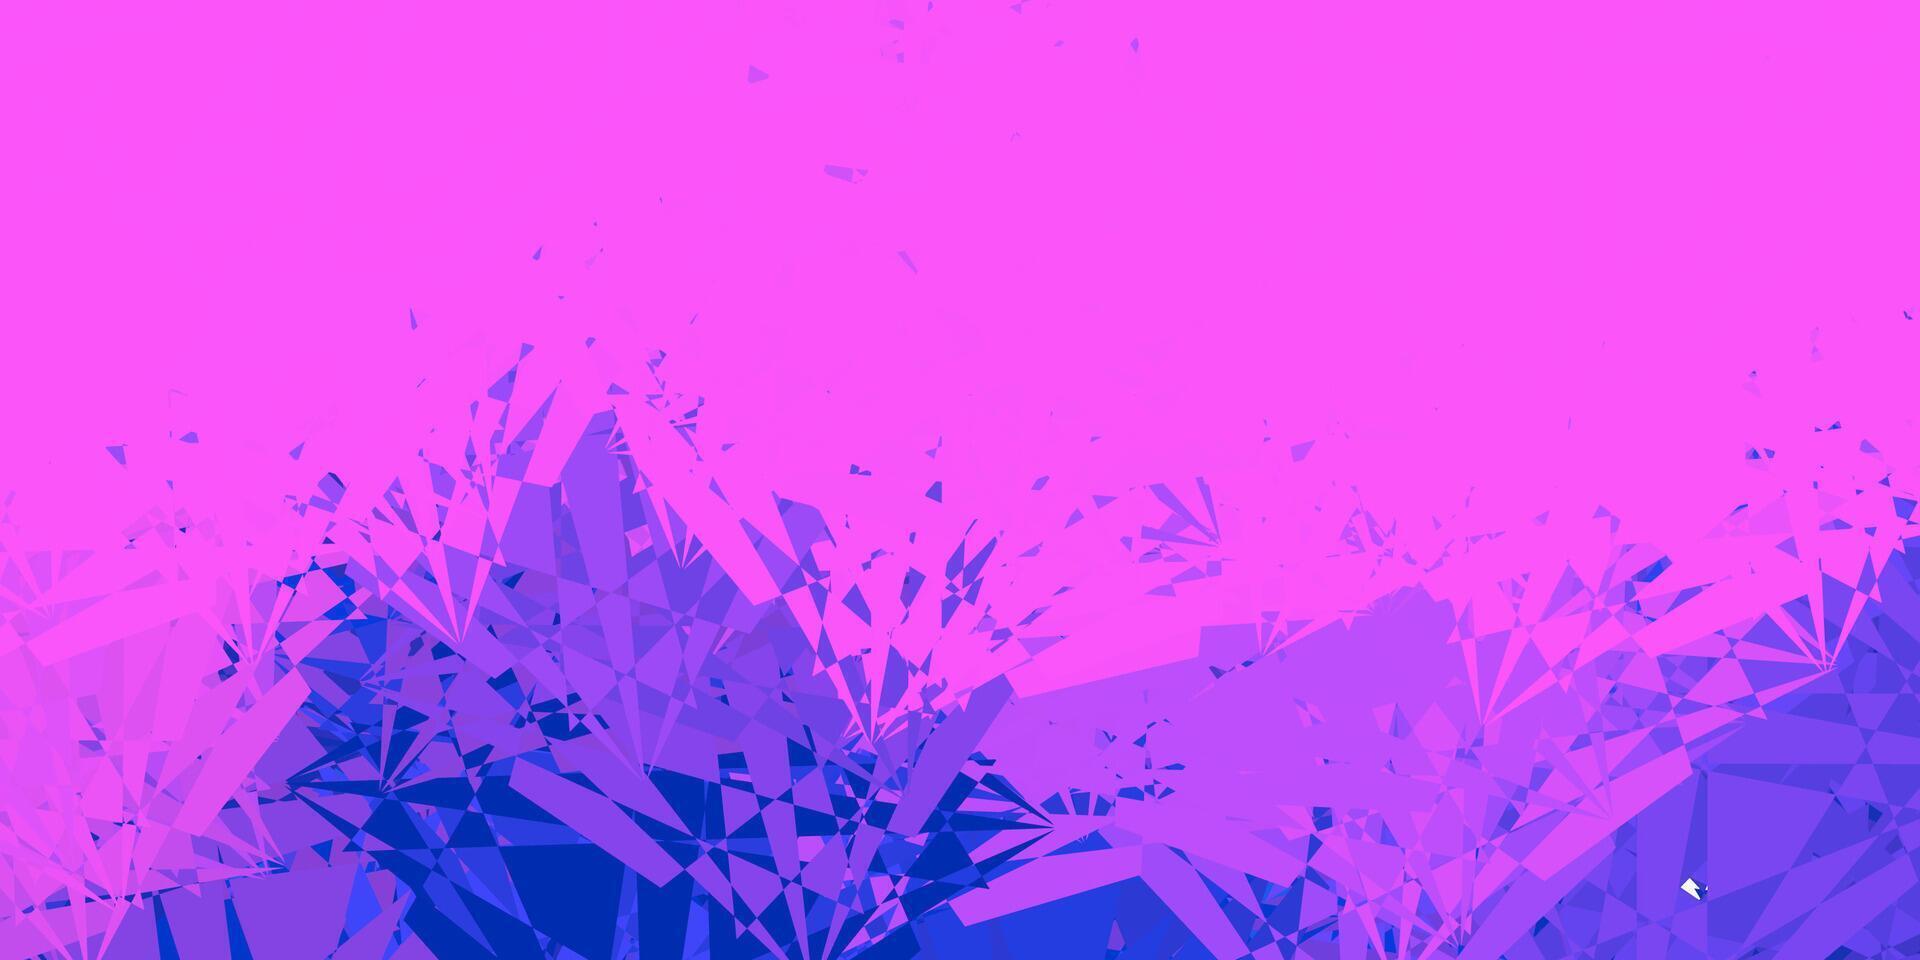 ljus rosa, blå mönster med polygonal former. vektor